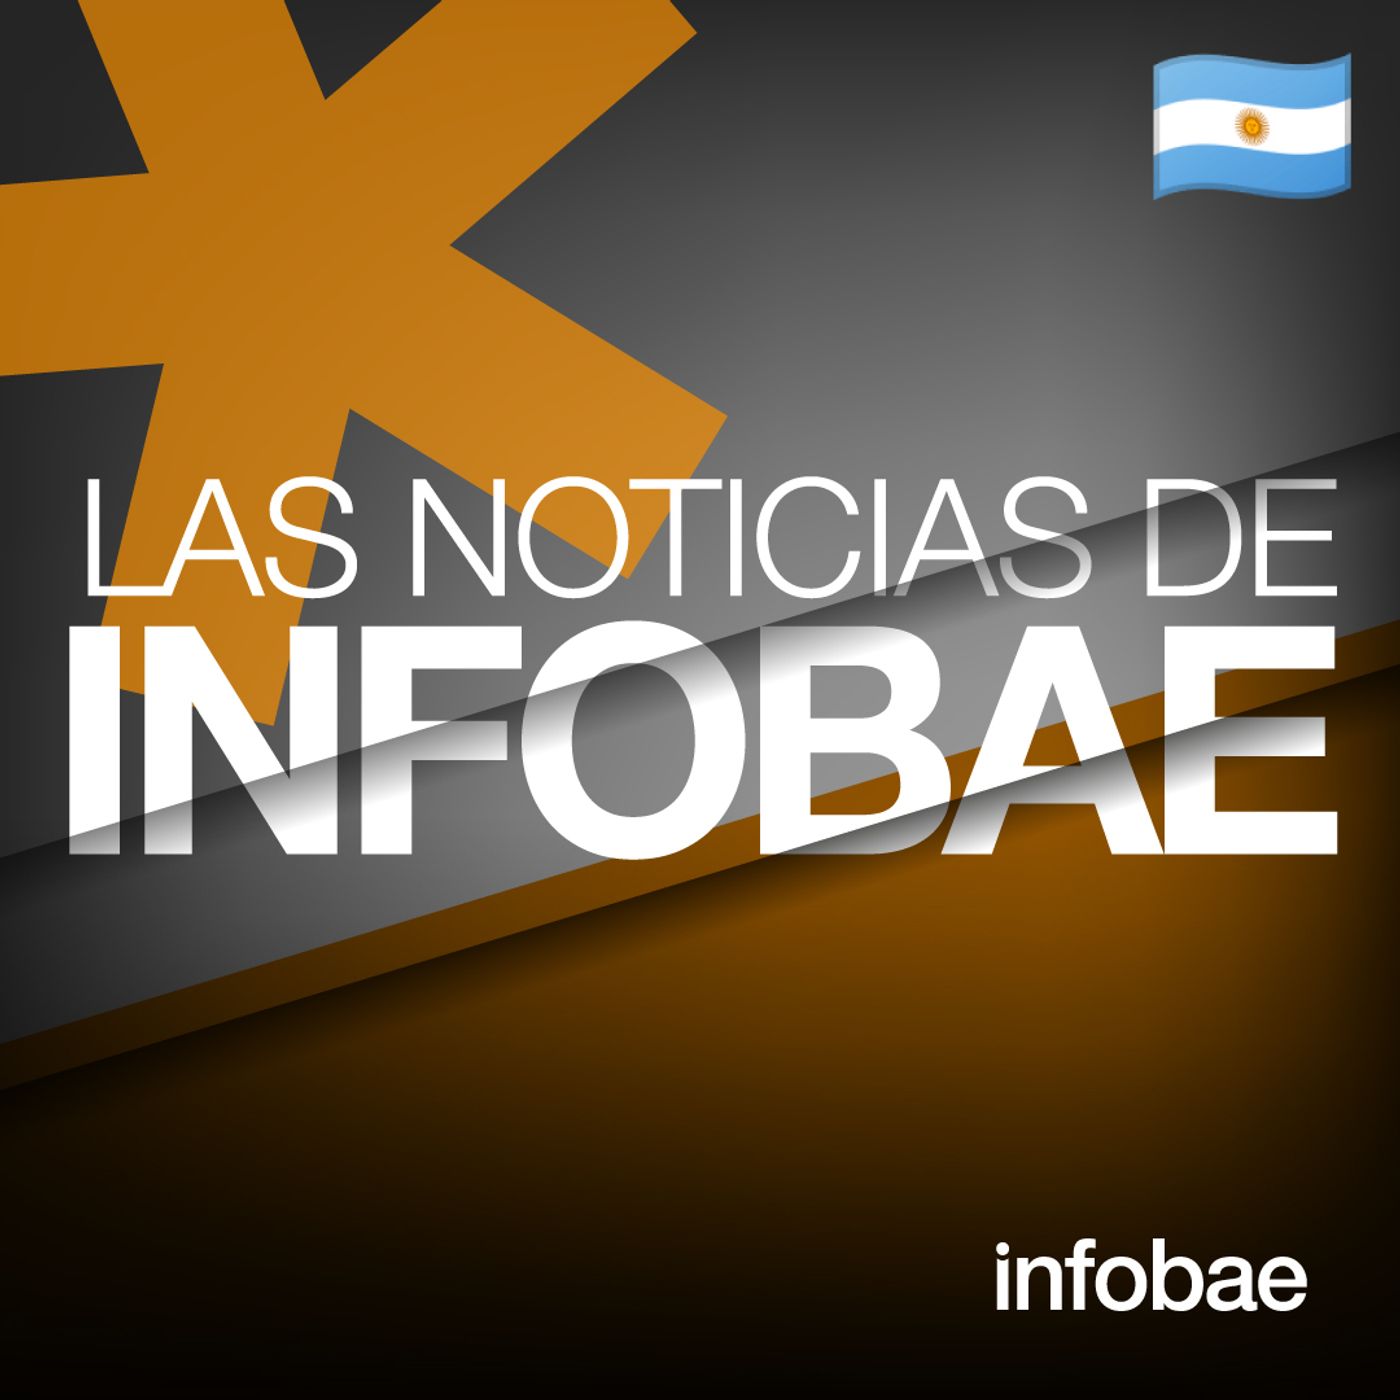 588: Las Noticias de Infobae (AR)